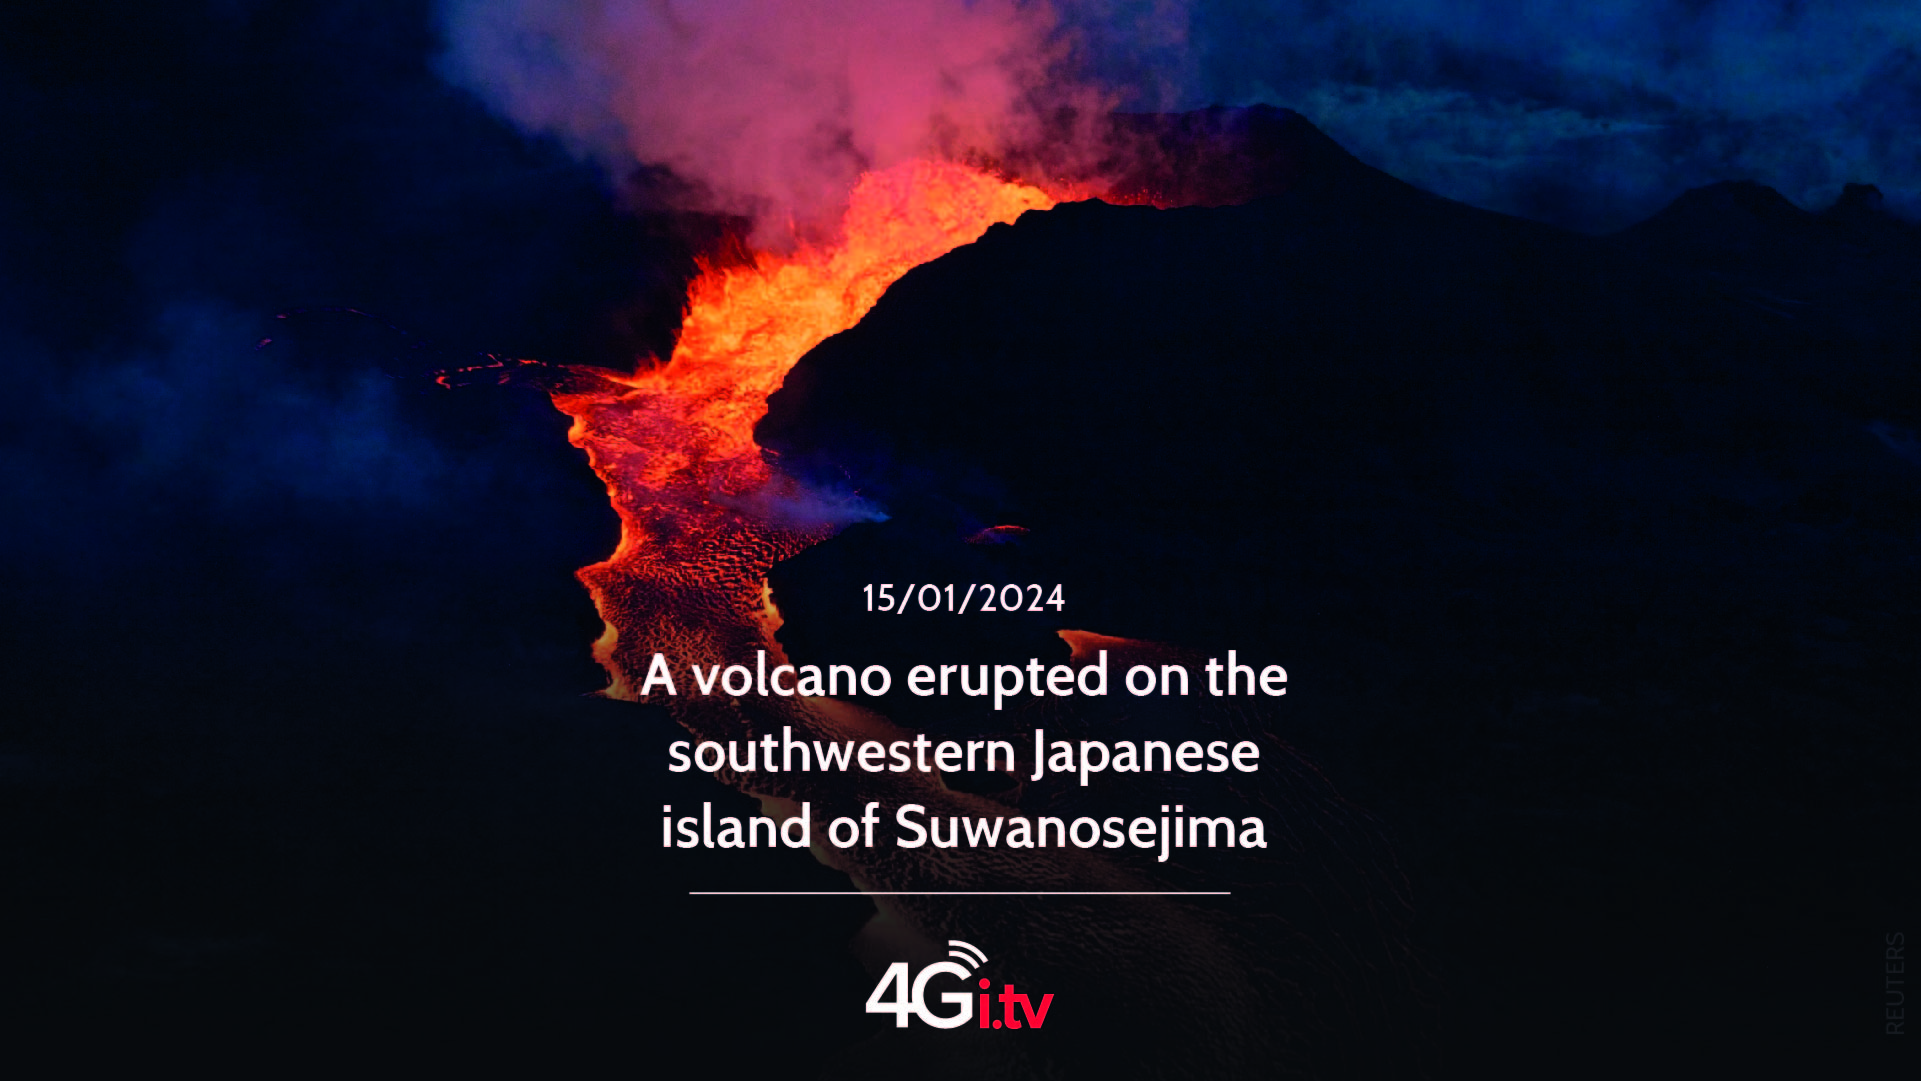 Lesen Sie mehr über den Artikel A volcano erupted on the southwestern Japanese island of Suwanosejima